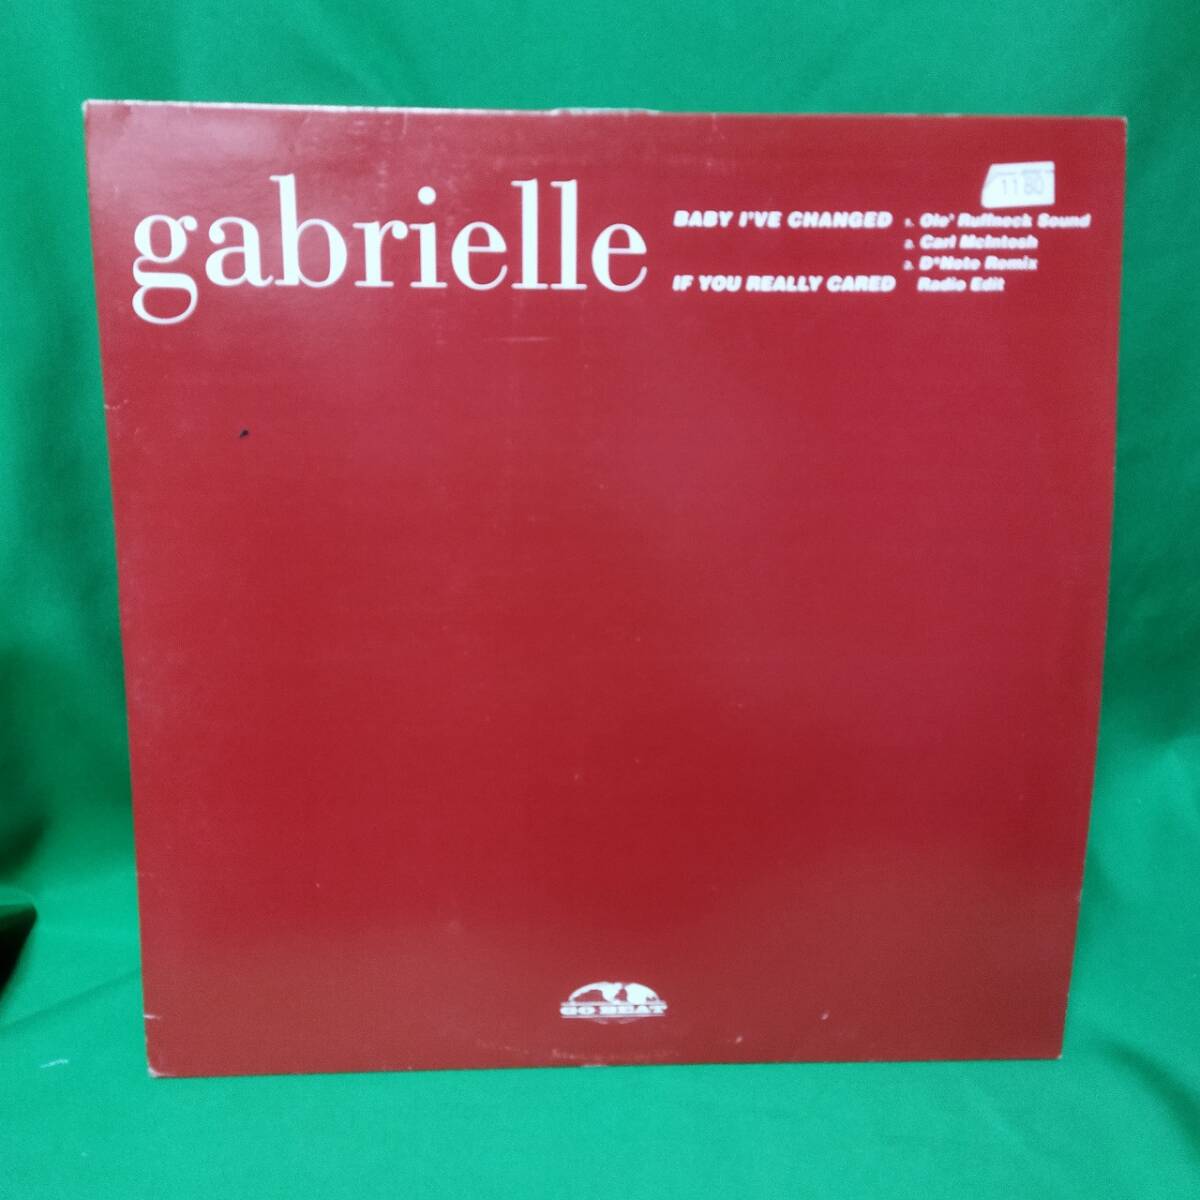 12' レコード Gabrielle - Baby I've Changed (Remixes) / If You Really Caredの画像1